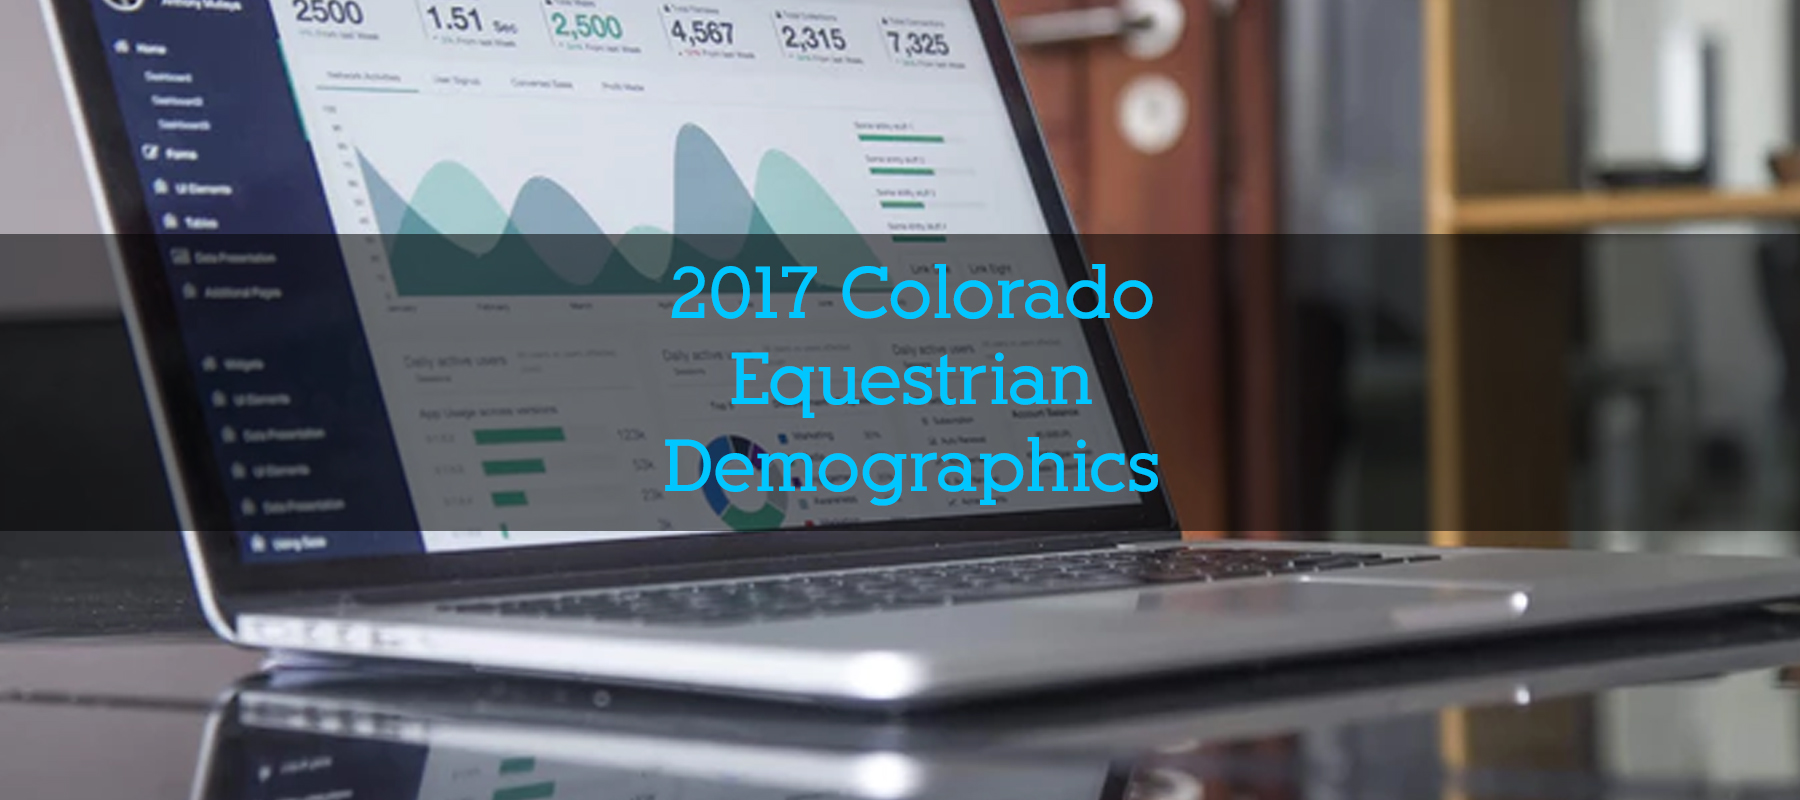 2017 Equestrian Demographics in Colorado